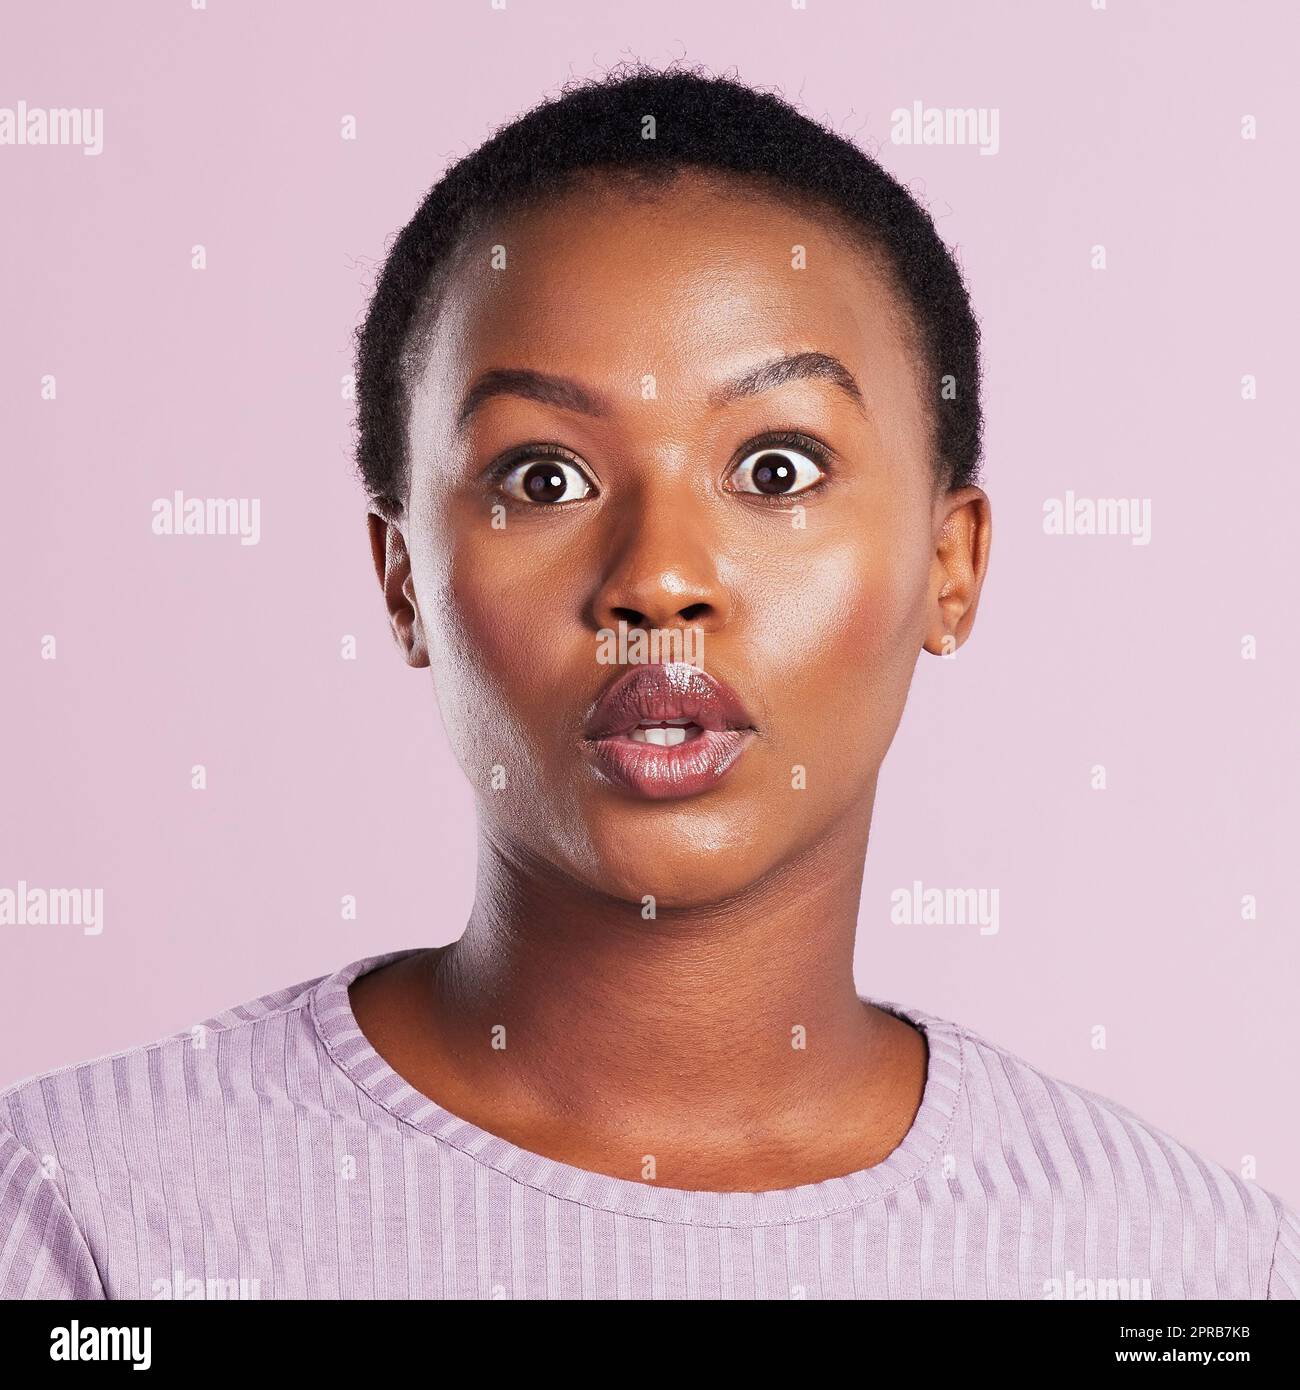 Das ist schockierend. Studioaufnahme einer jungen Frau, die vor einem rosa Hintergrund schockiert aussieht. Stockfoto